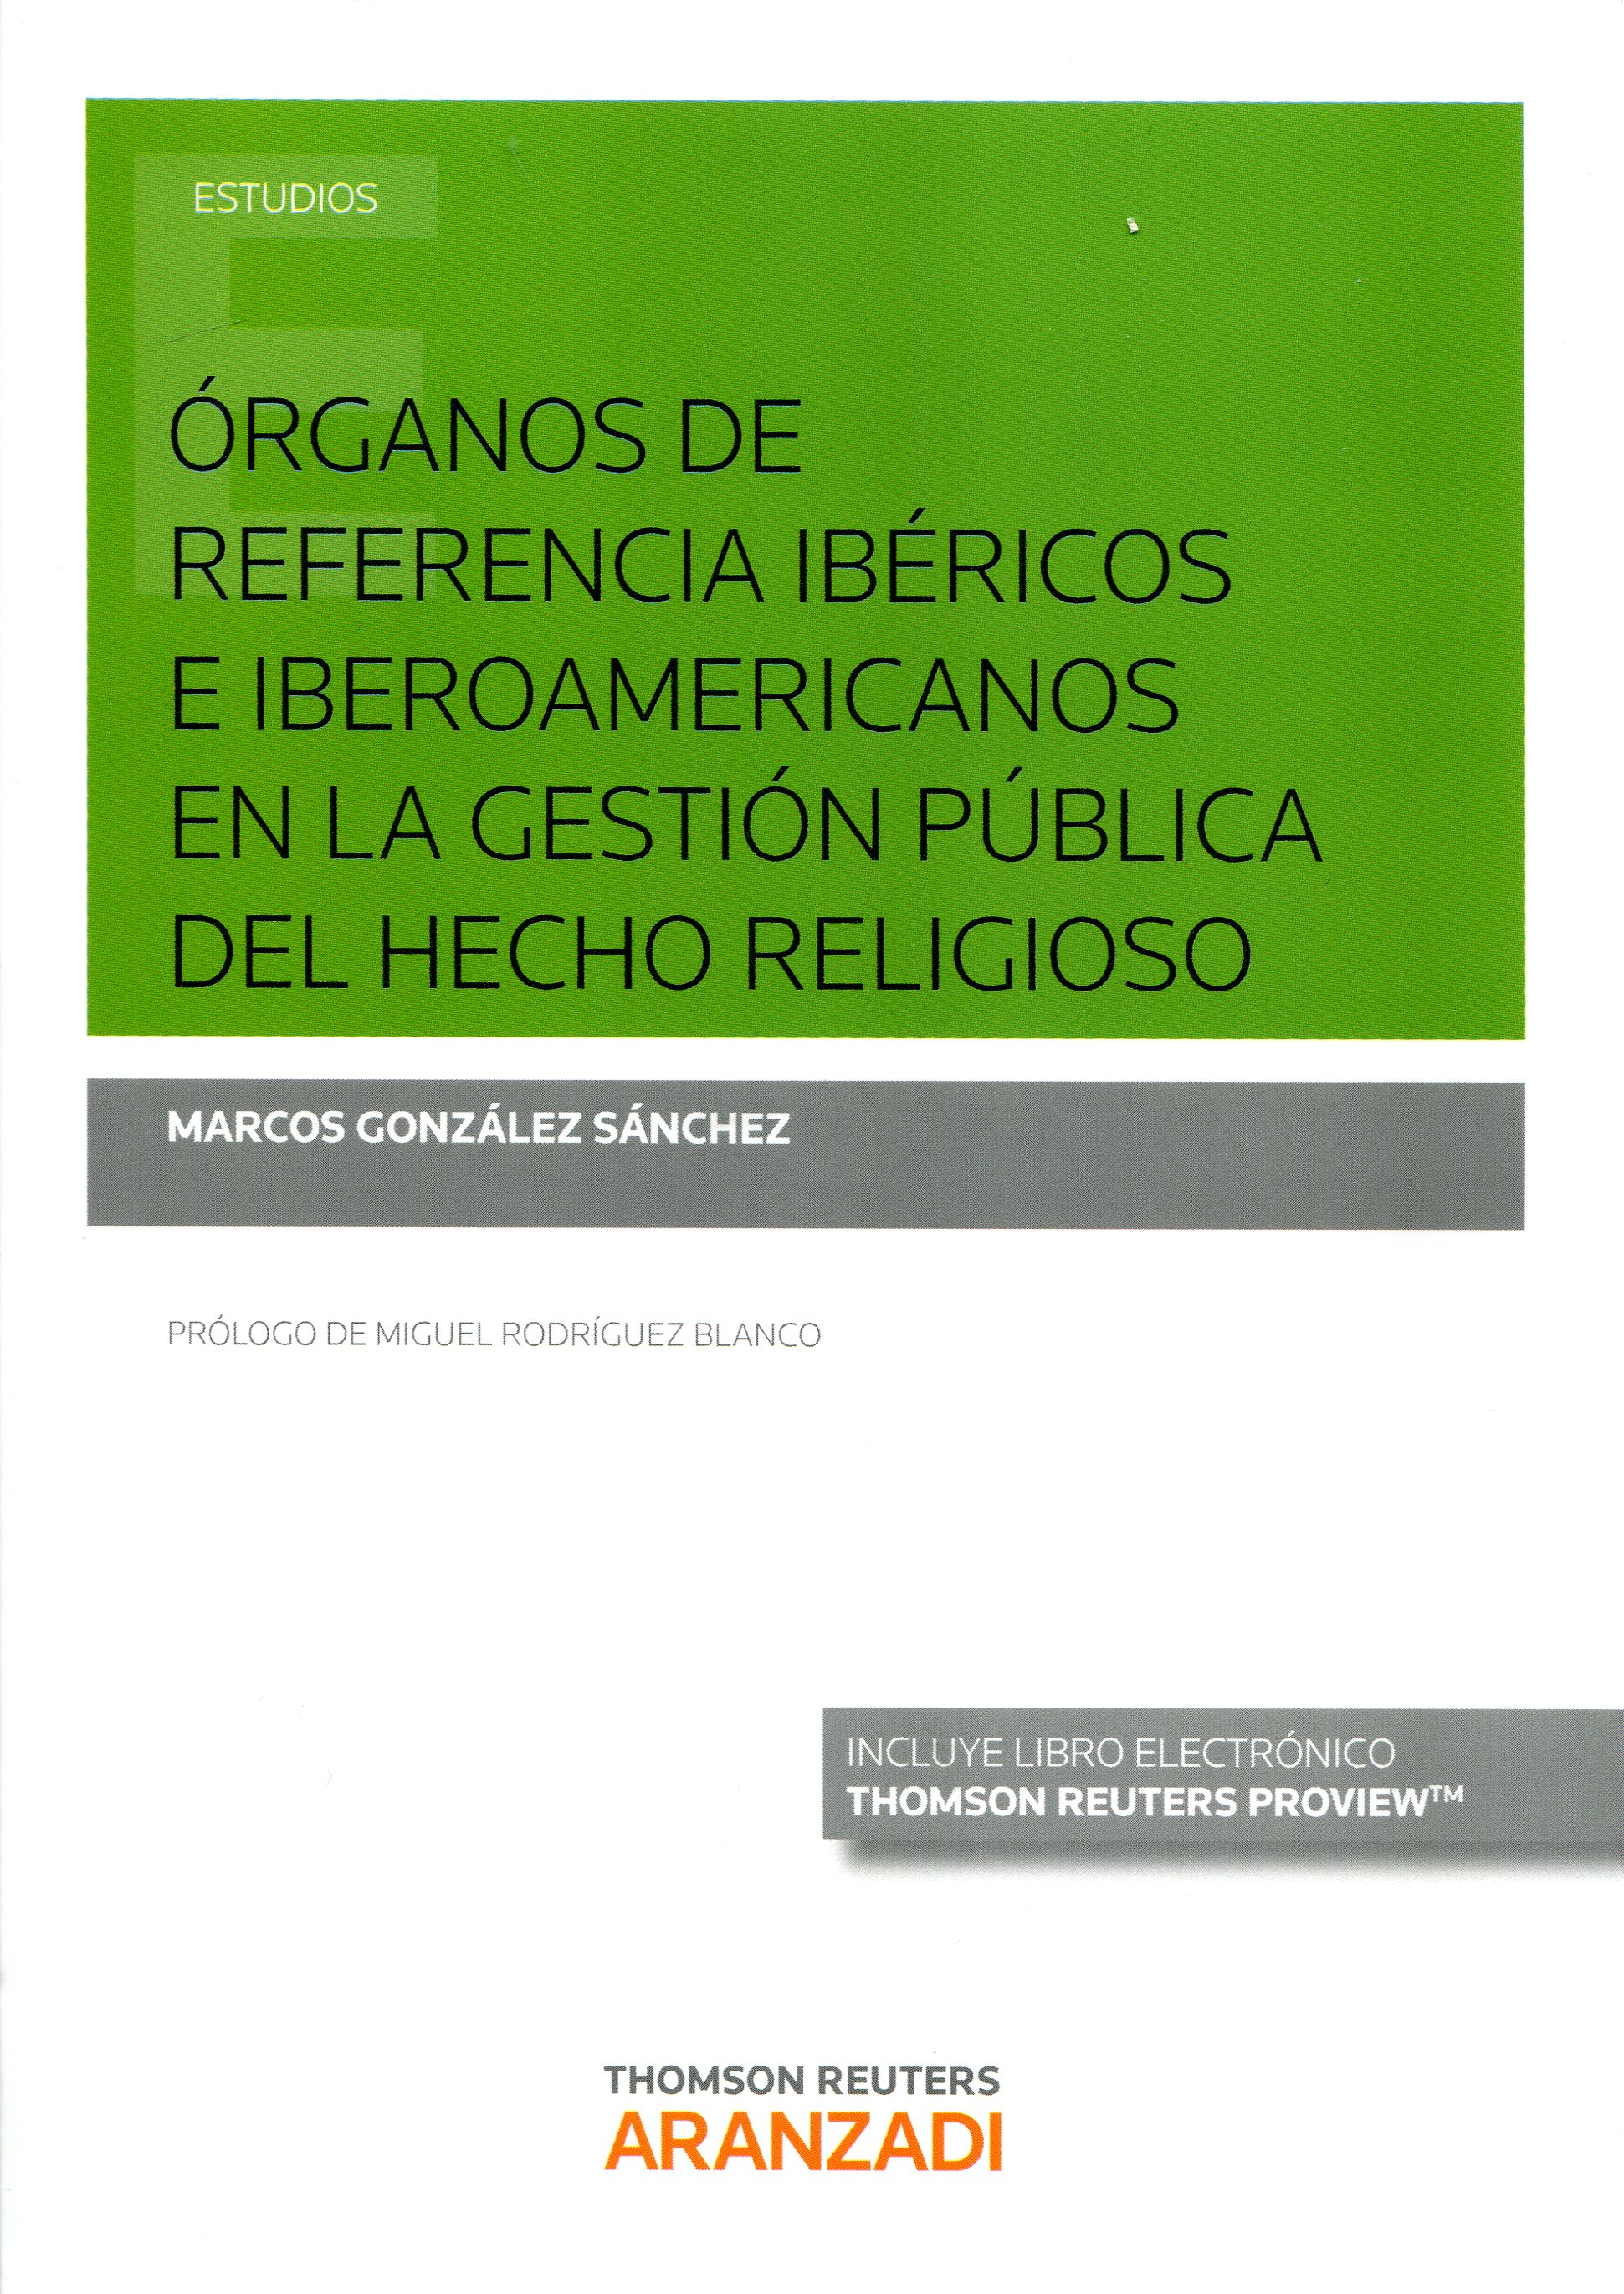 Órganos de referencia ibéricos e iberoamericanos en la gestión pública del hecho religioso